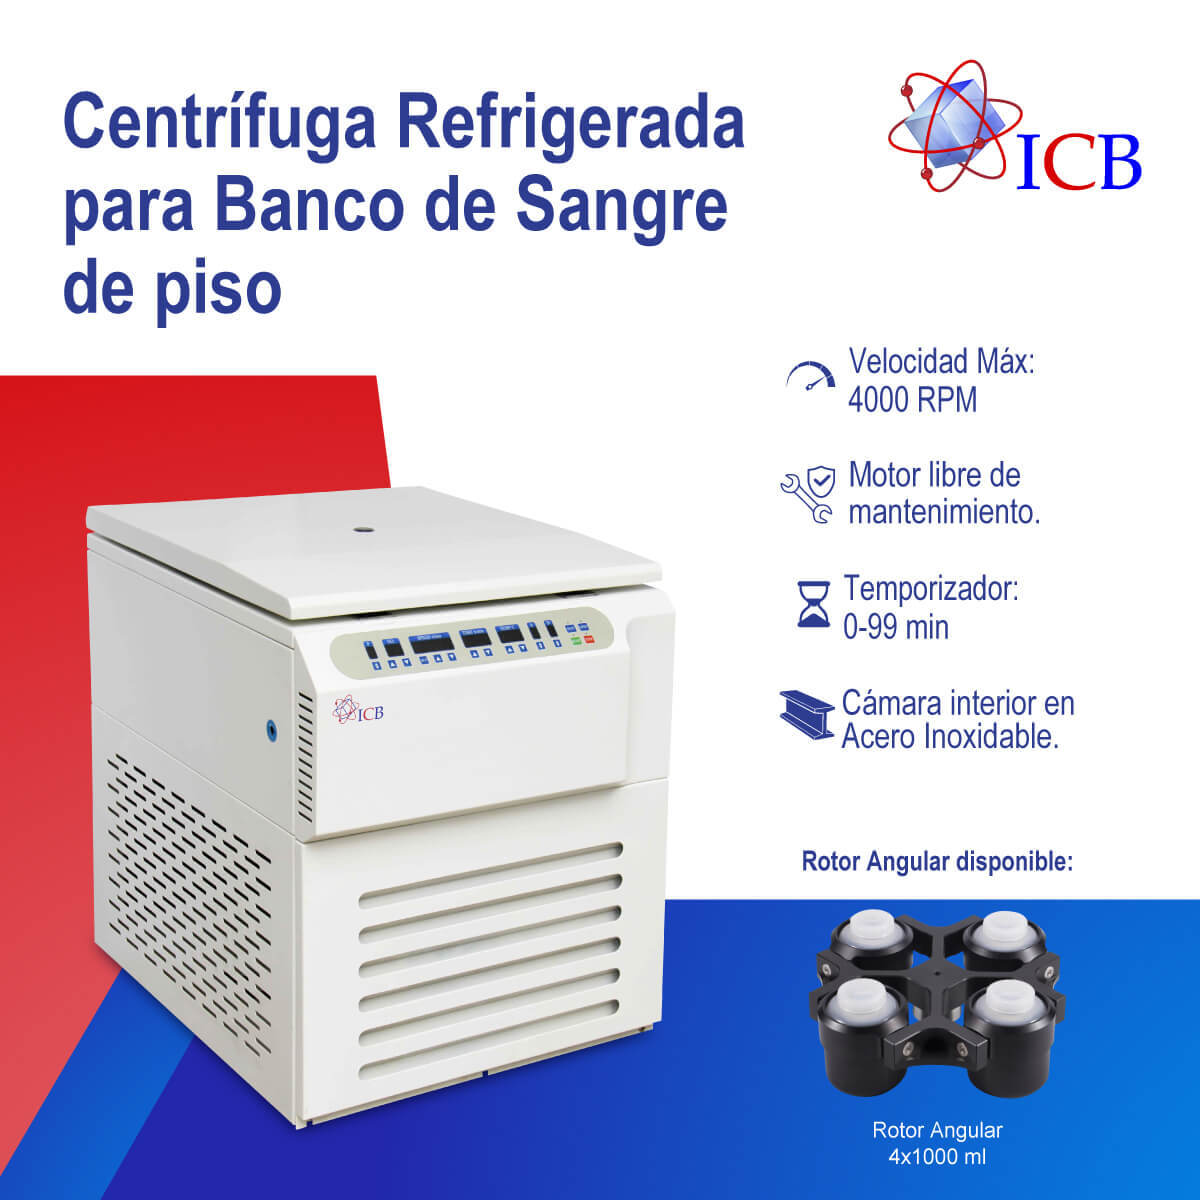 centrifuga refrigerada de piso Marca ICB